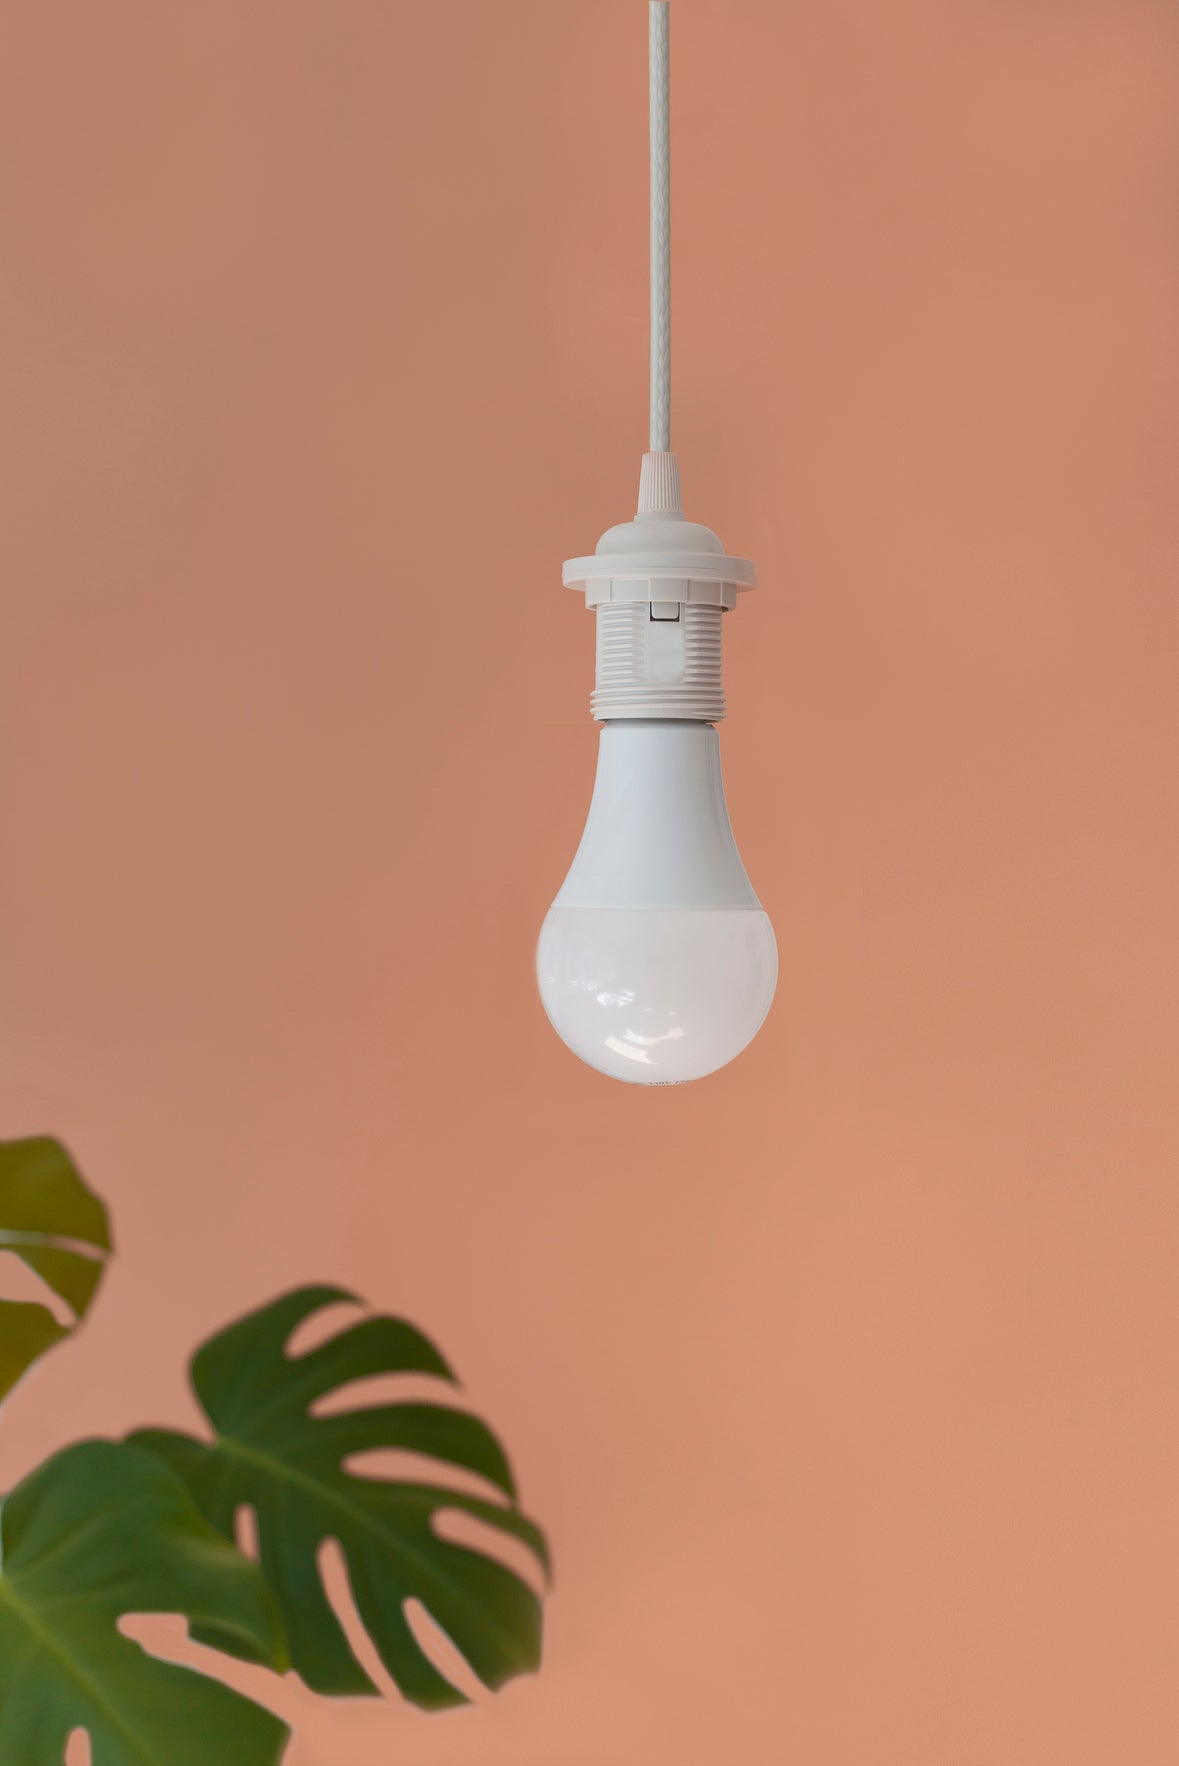 Bright Idea | LED Lamp